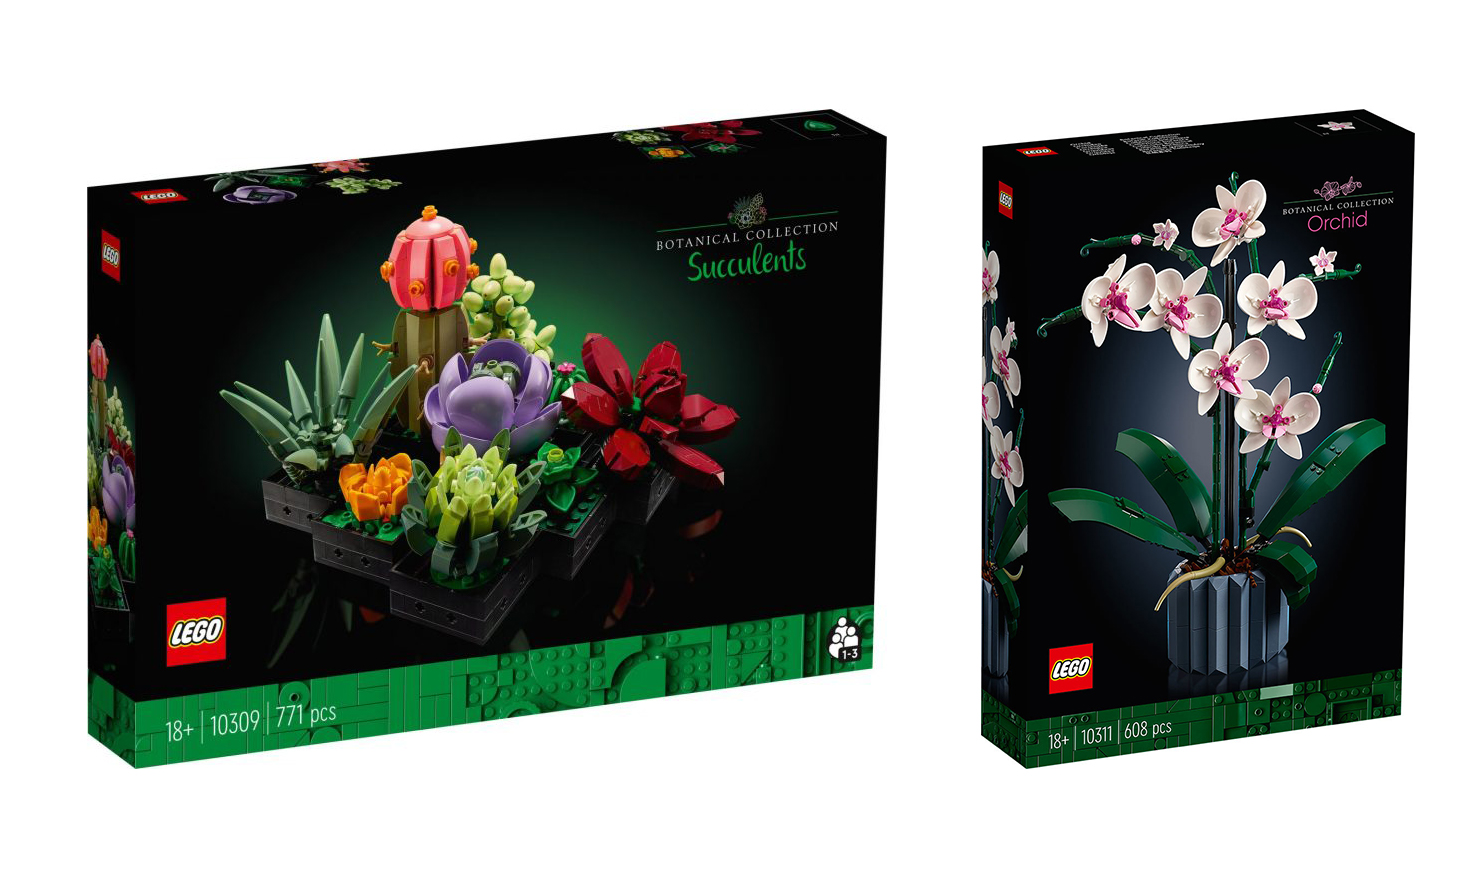 LEGO 推出 10309 多肉植物与 10311 兰花创意盒组